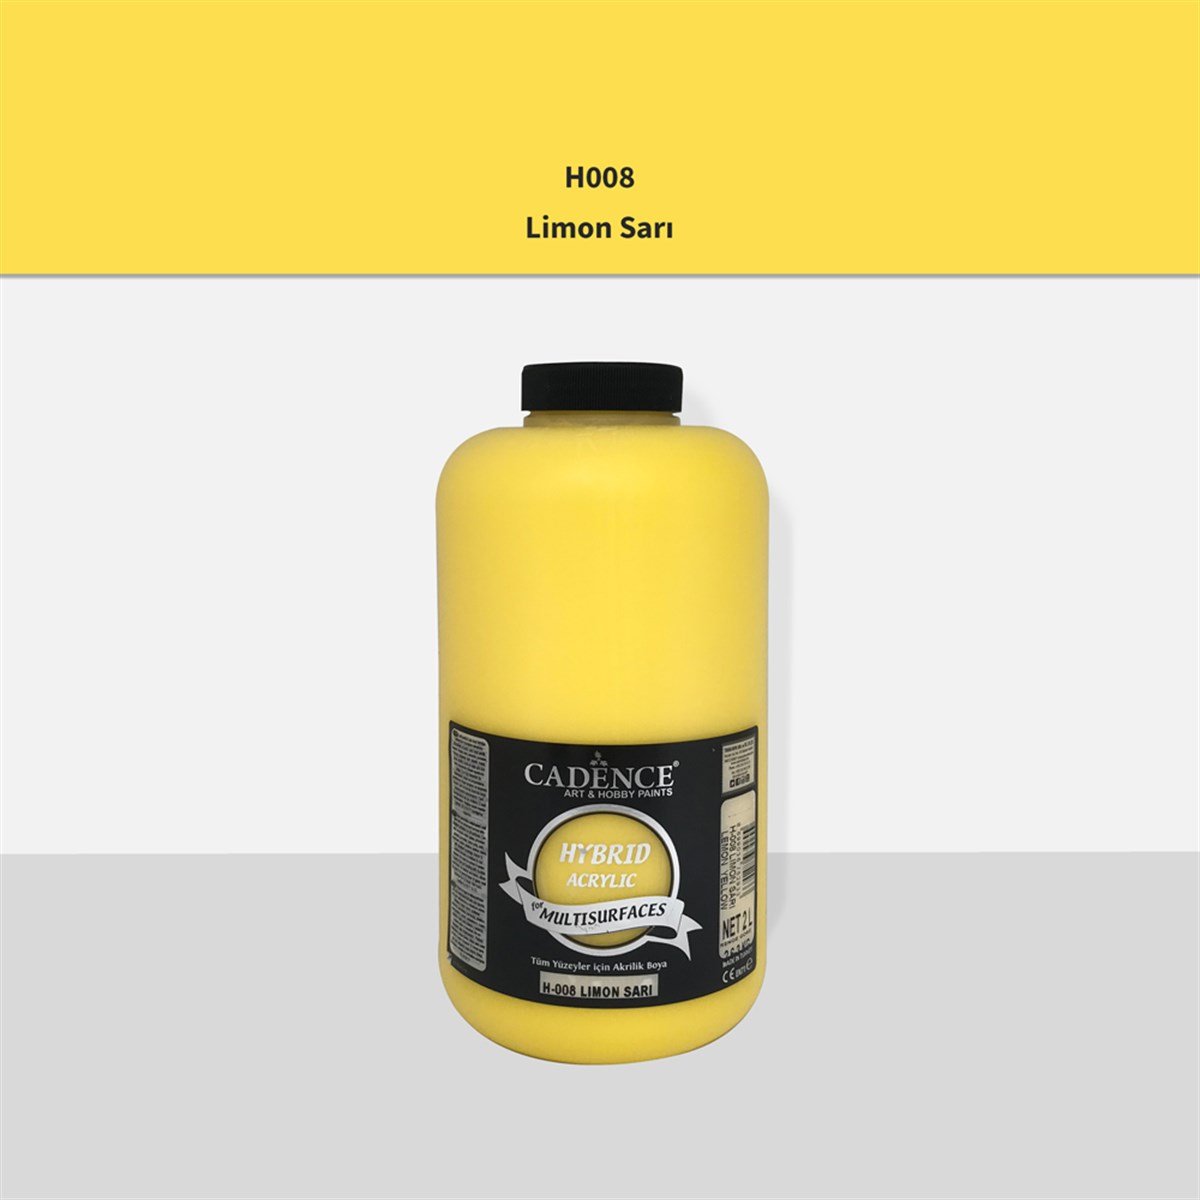 Cadence H008 Limon Sarı Multisurface Akrilik Boya 2LT (3 kg)